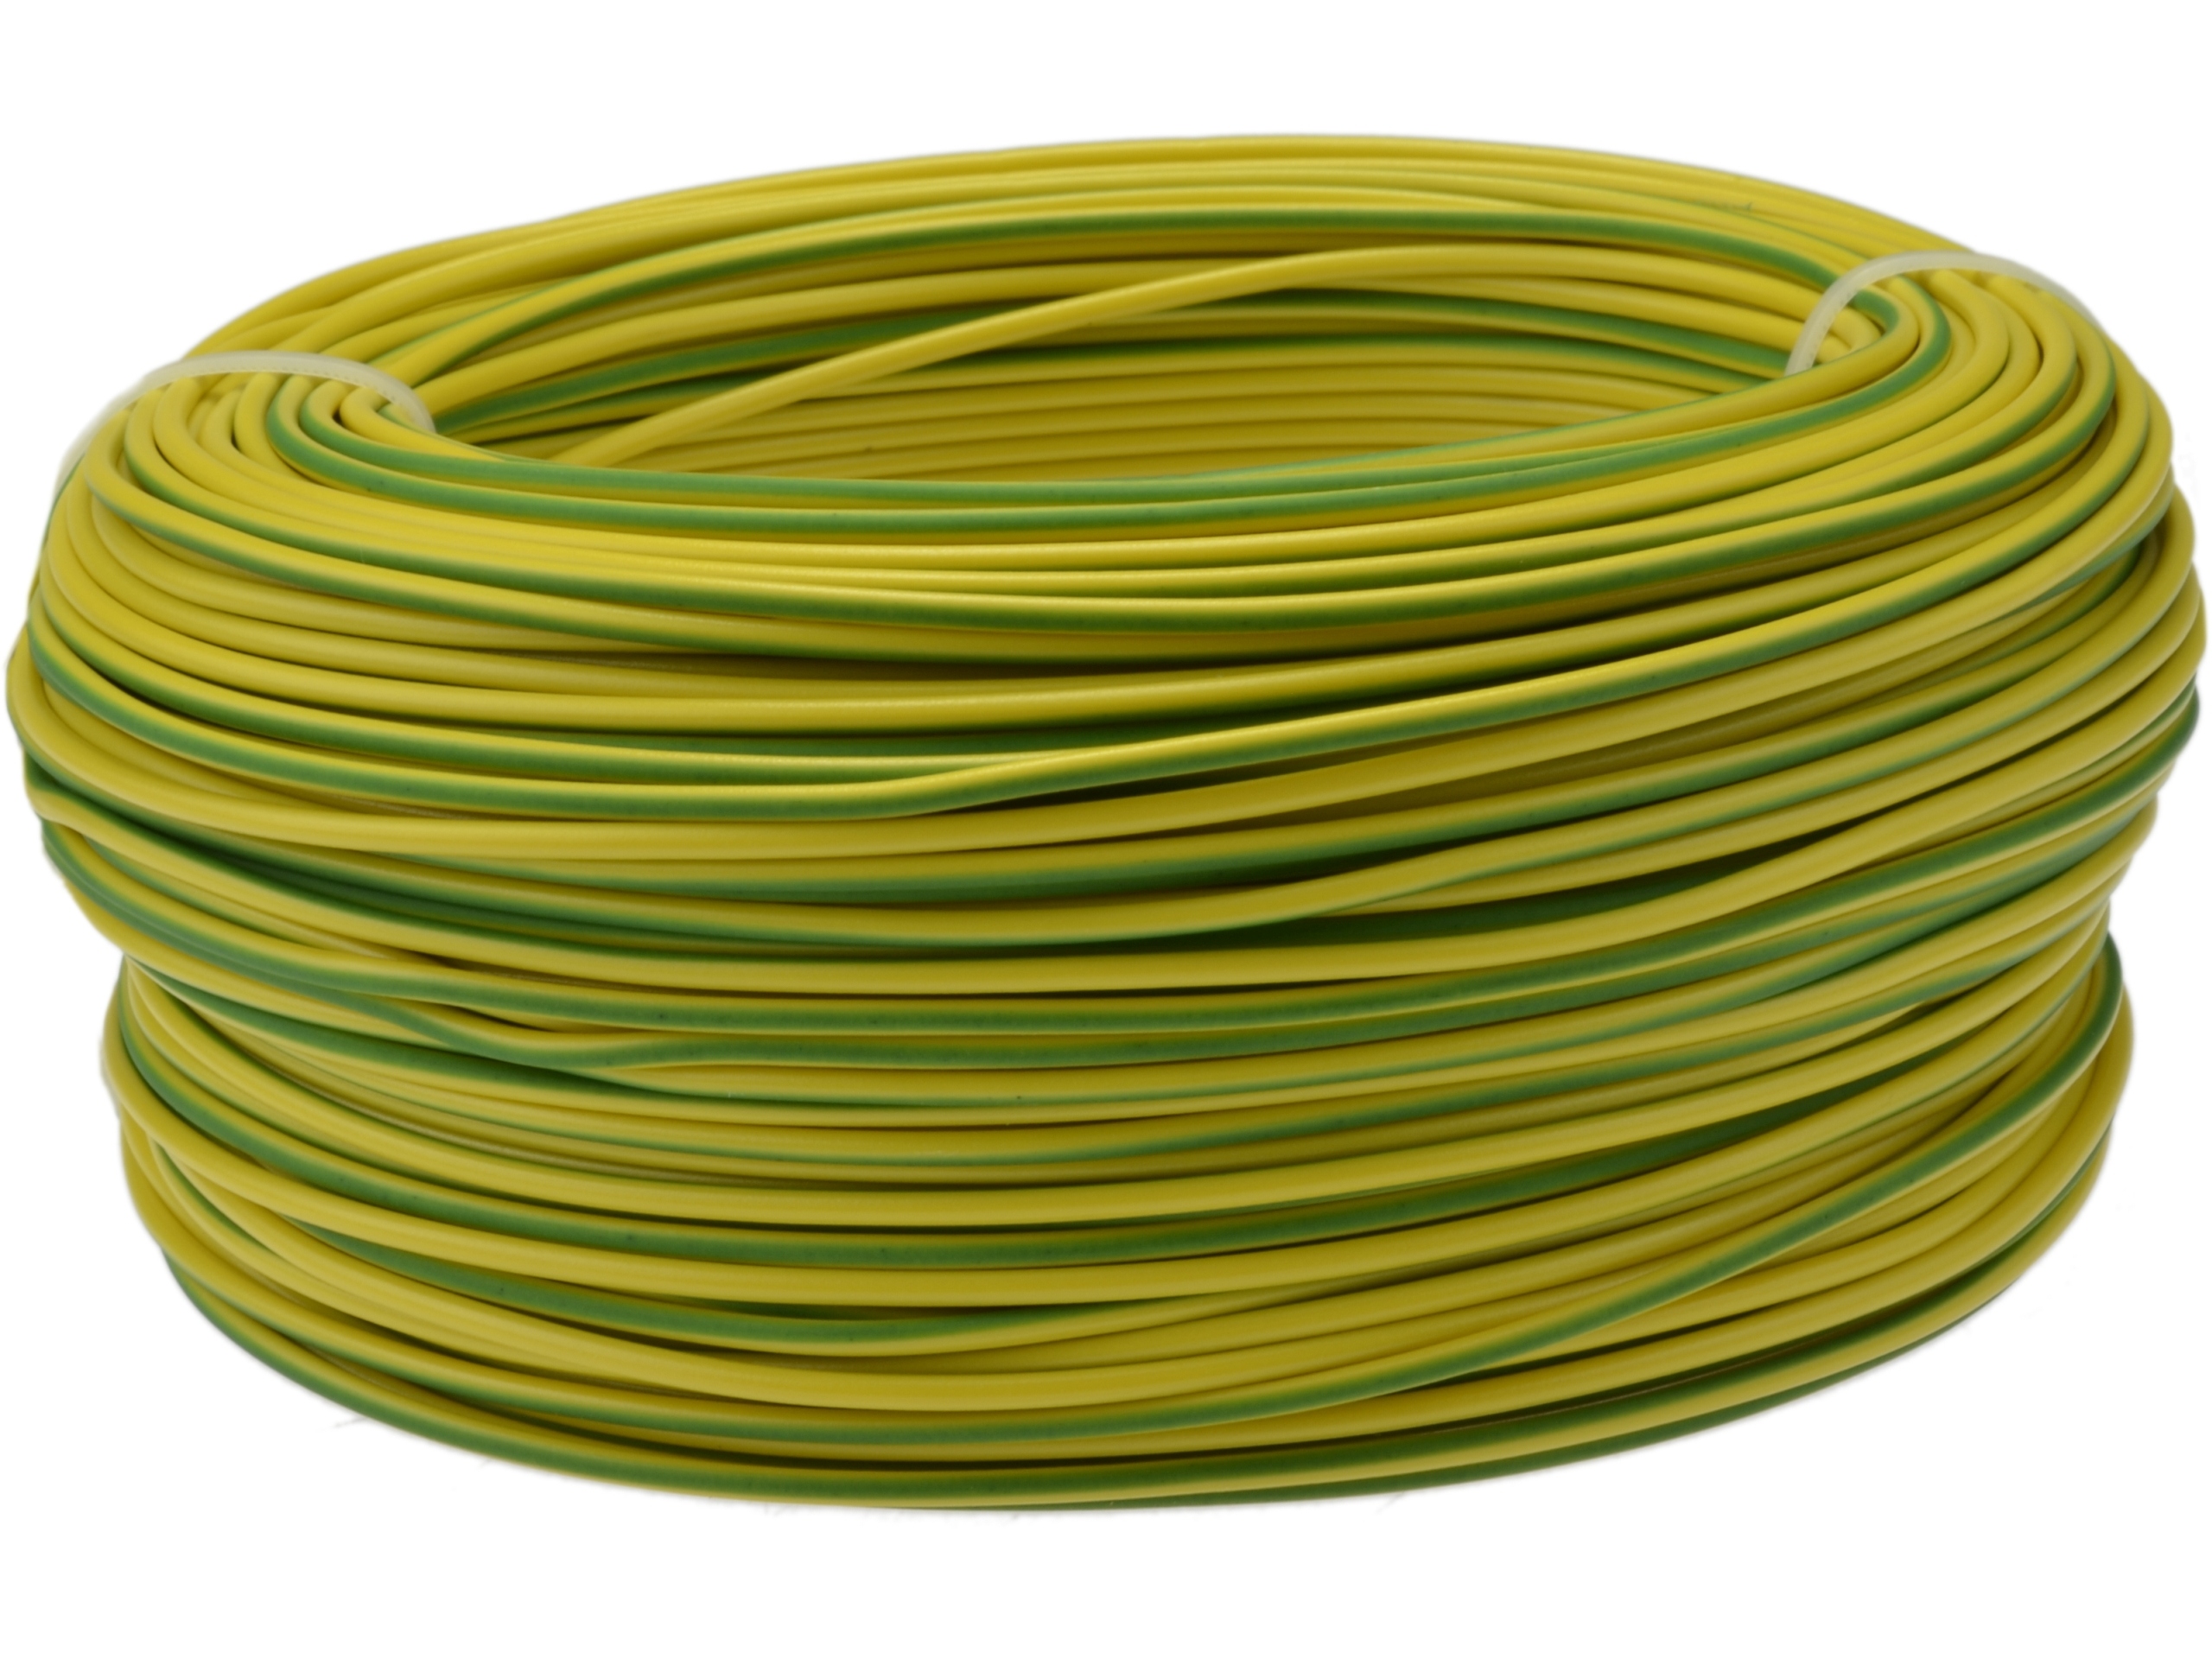 Установочные провода изоляция. Кабель заземления (желто-зеленый), 16mm2 h07z1-k. Провод h07v-k 50 кв.мм, зелено-желтый, ту16.к01-46-2004. Провод заземления 4мм2 желто-зеленый. H07v-k провод монтажный 4,0 кв.мм. Желто/зел.(уп-100м).